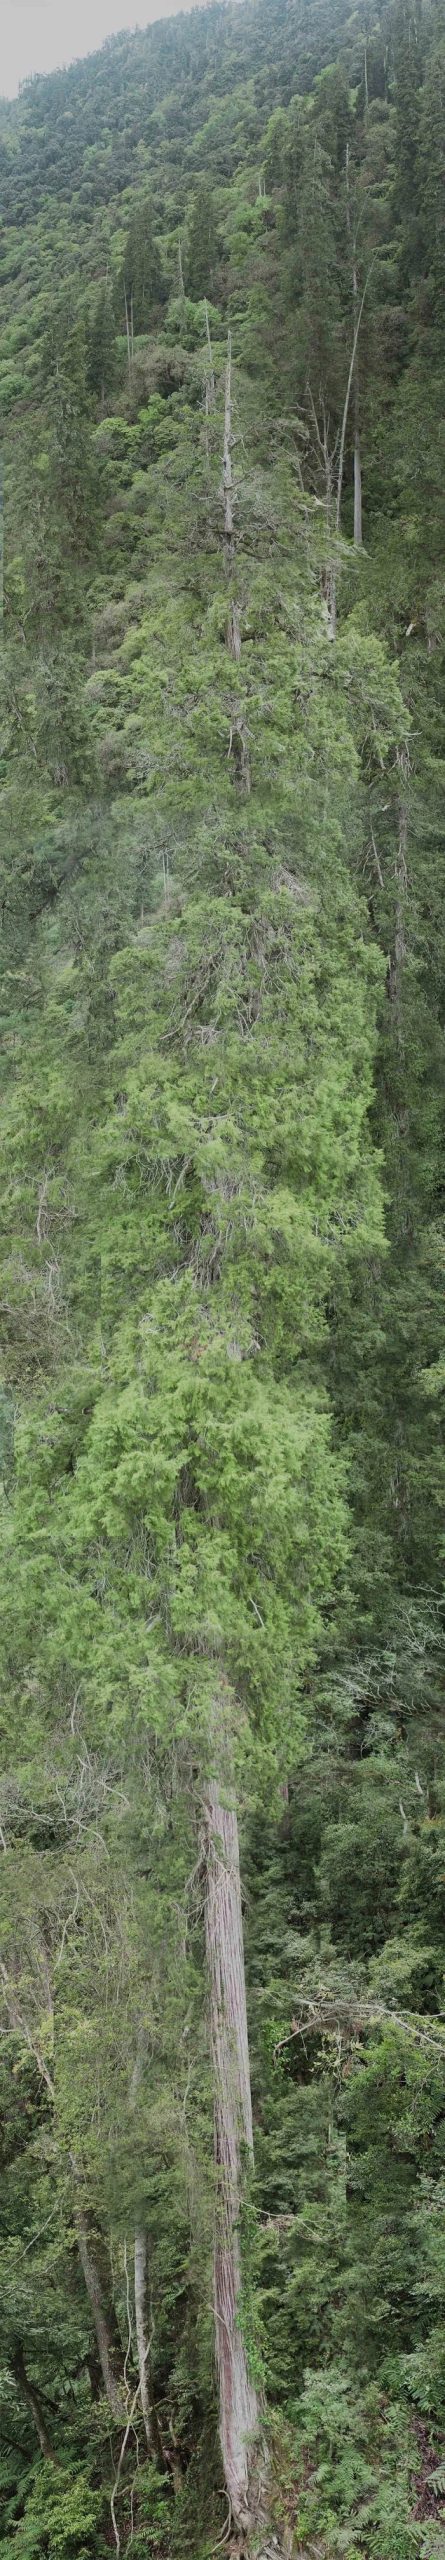 Cay bach min scaled - Phát hiện cây cao nhất châu Á tại hẻm núi sâu nhất hành tinh: Ai tìm ra? Ở đâu?